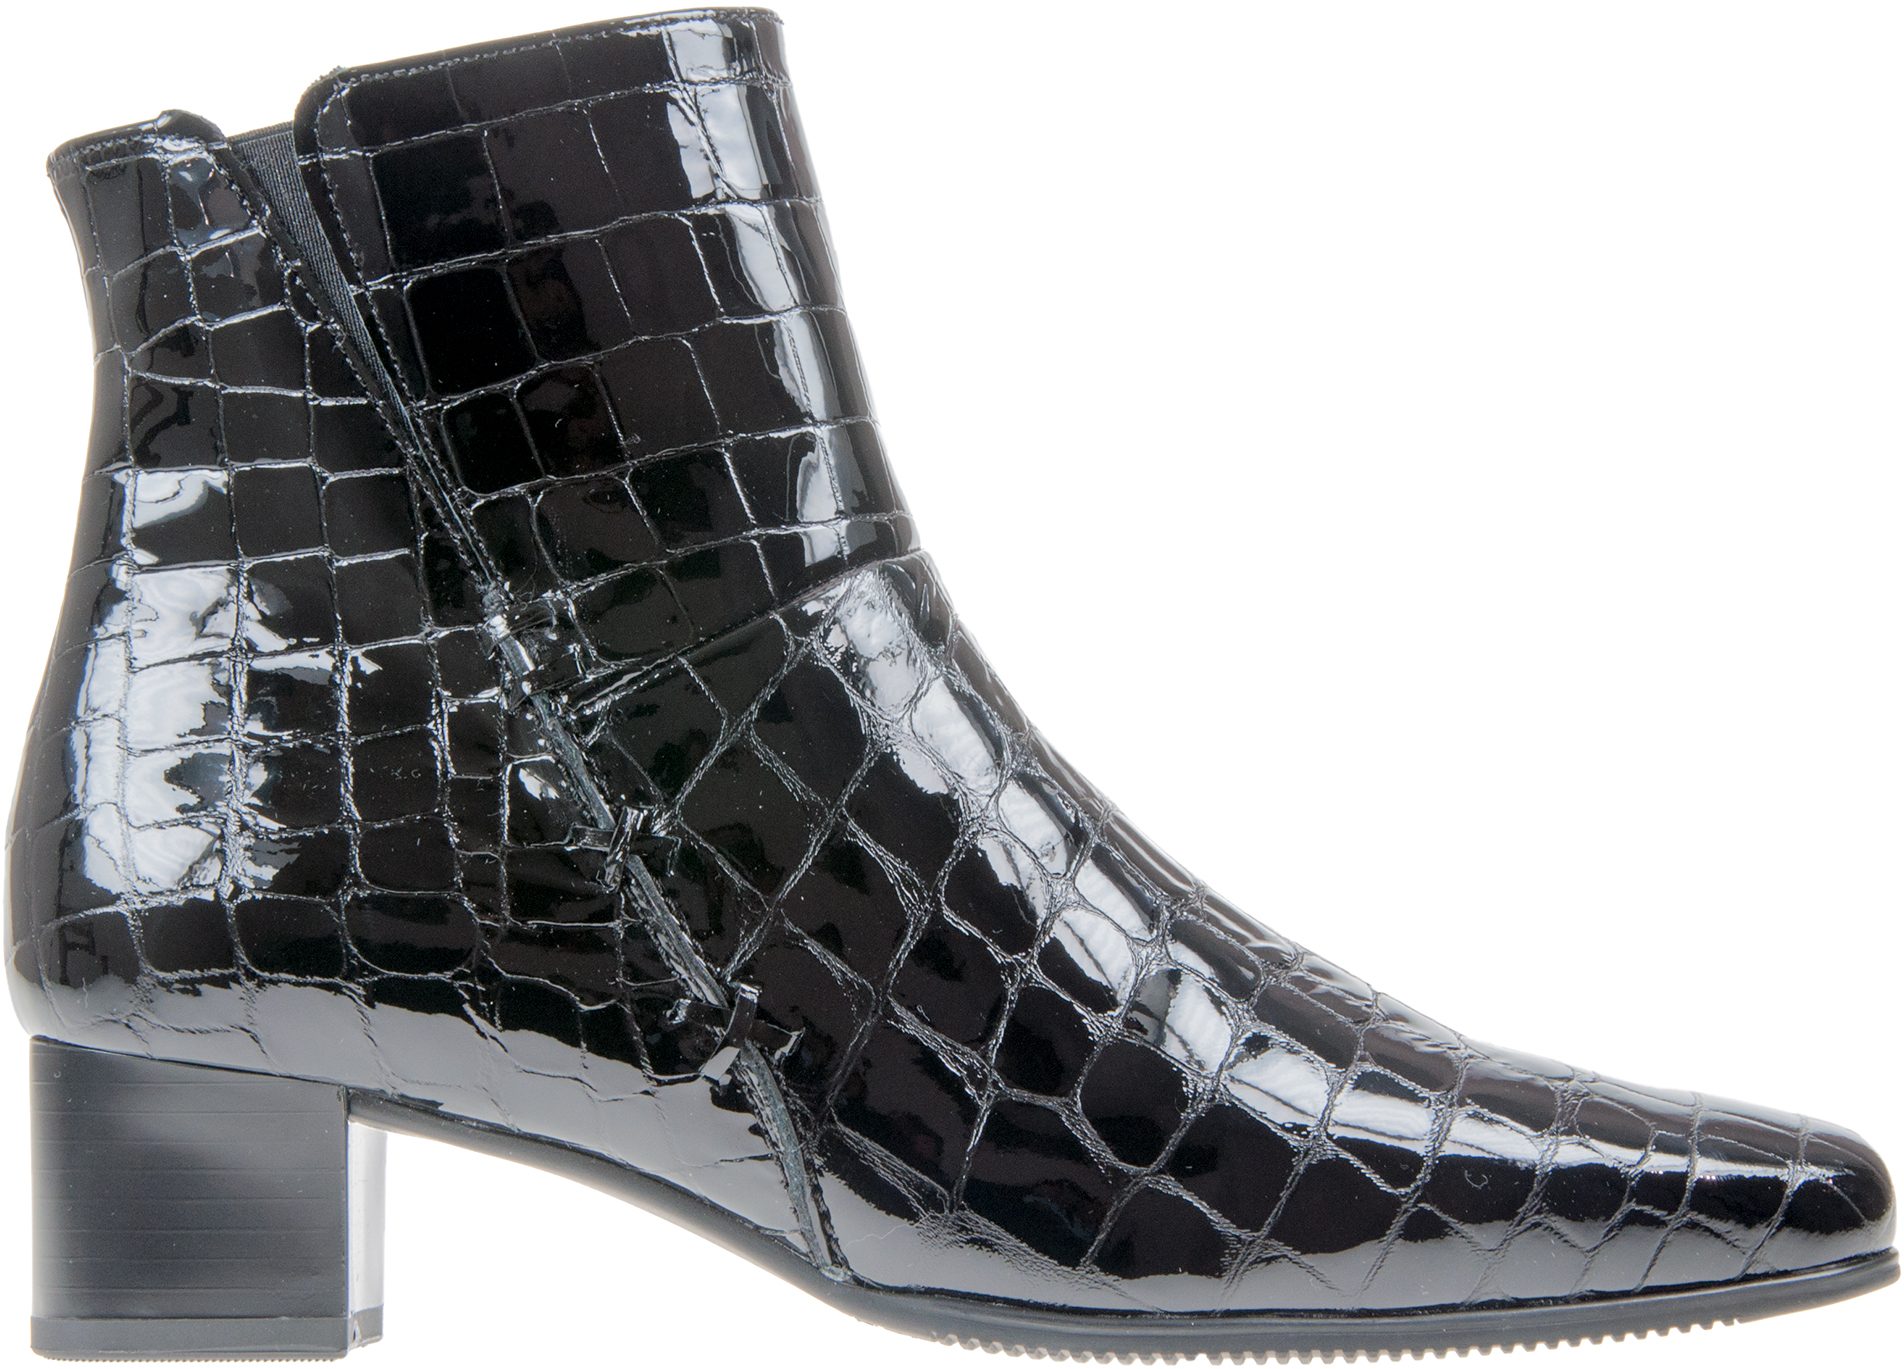 Gabor Bassanio Black Croc Patent 76.620.97 - Ankle Boots - Humphries Shoes